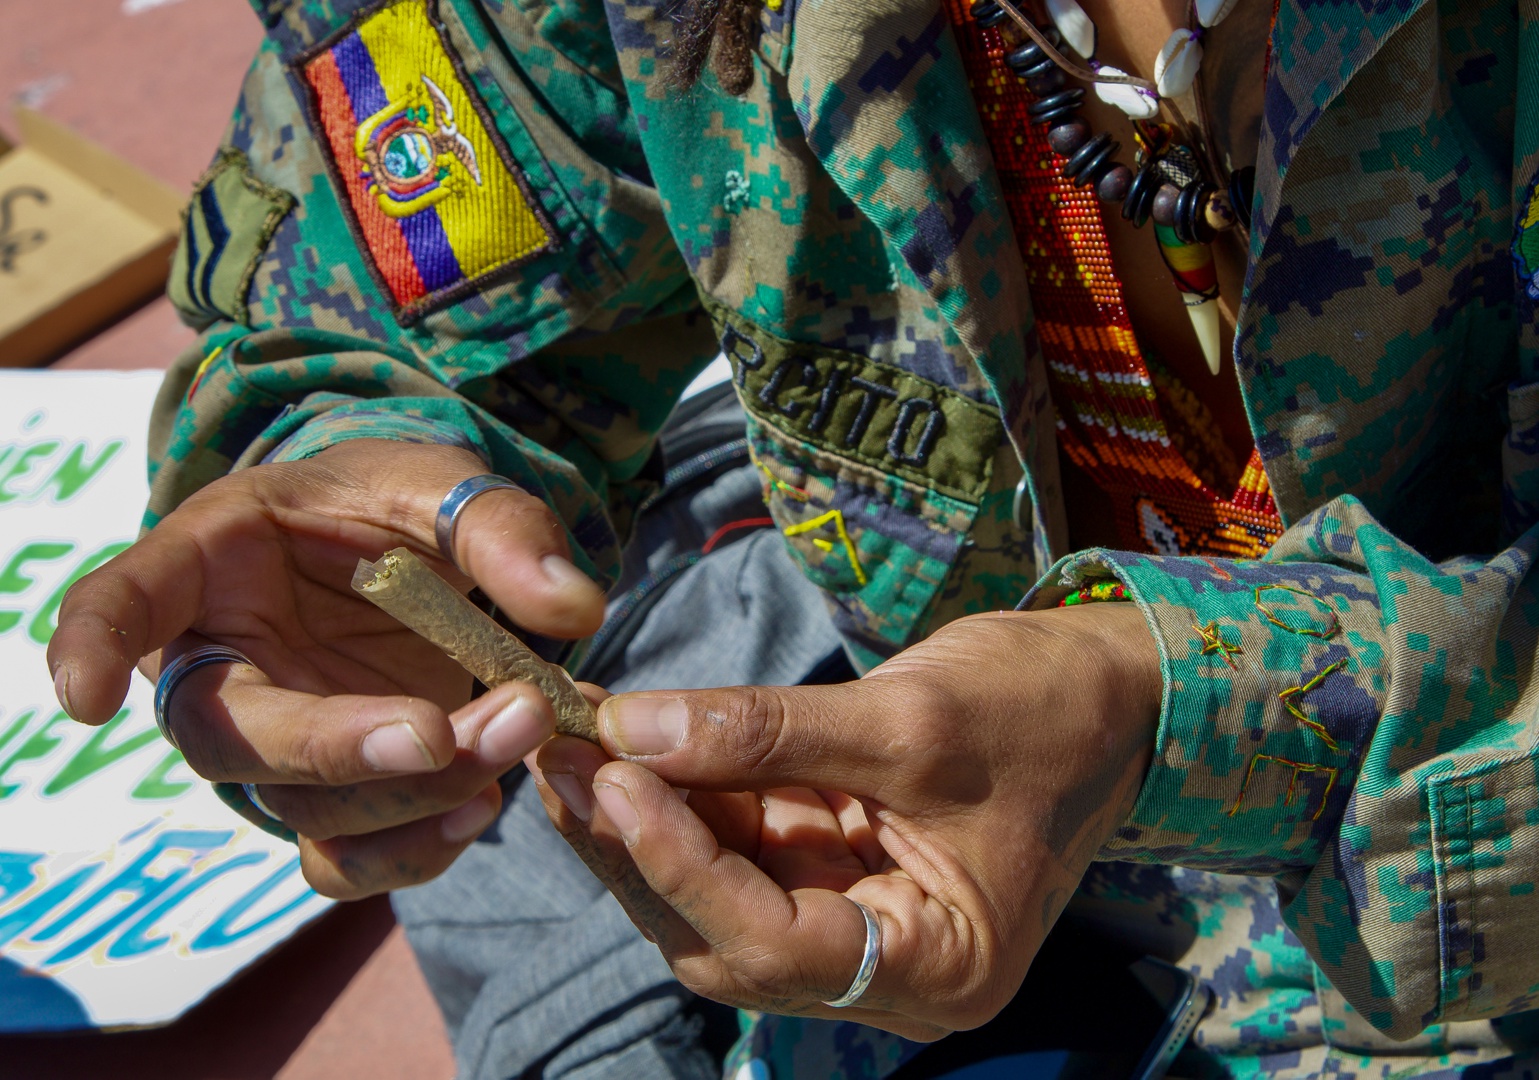 la marcha de la marihuana pide en ecuador legalizar el cultivo y cesar la criminalización